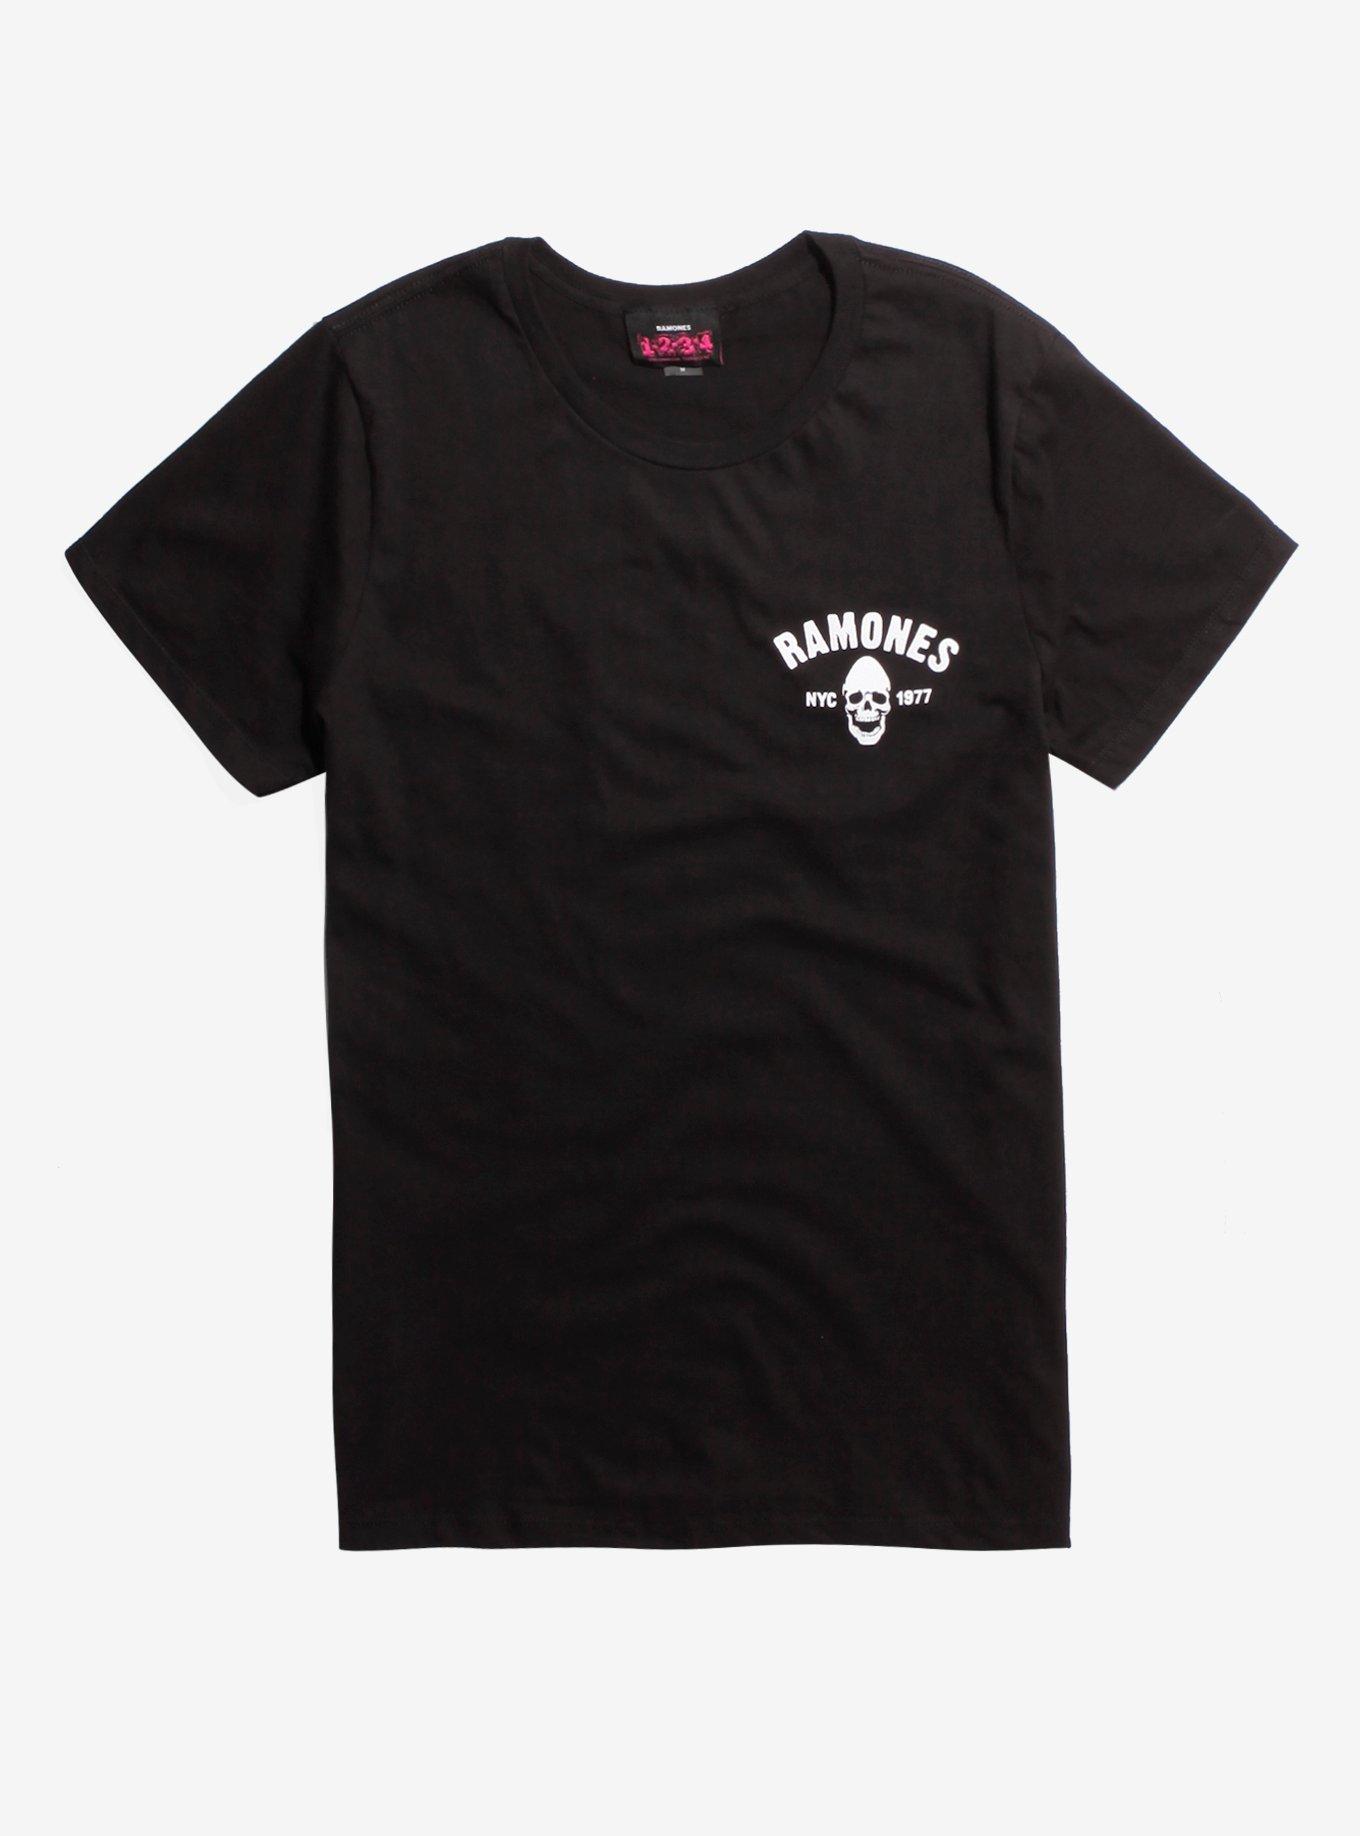 Ramones Pinhead Skull With Bats T-Shirt, BLACK, hi-res